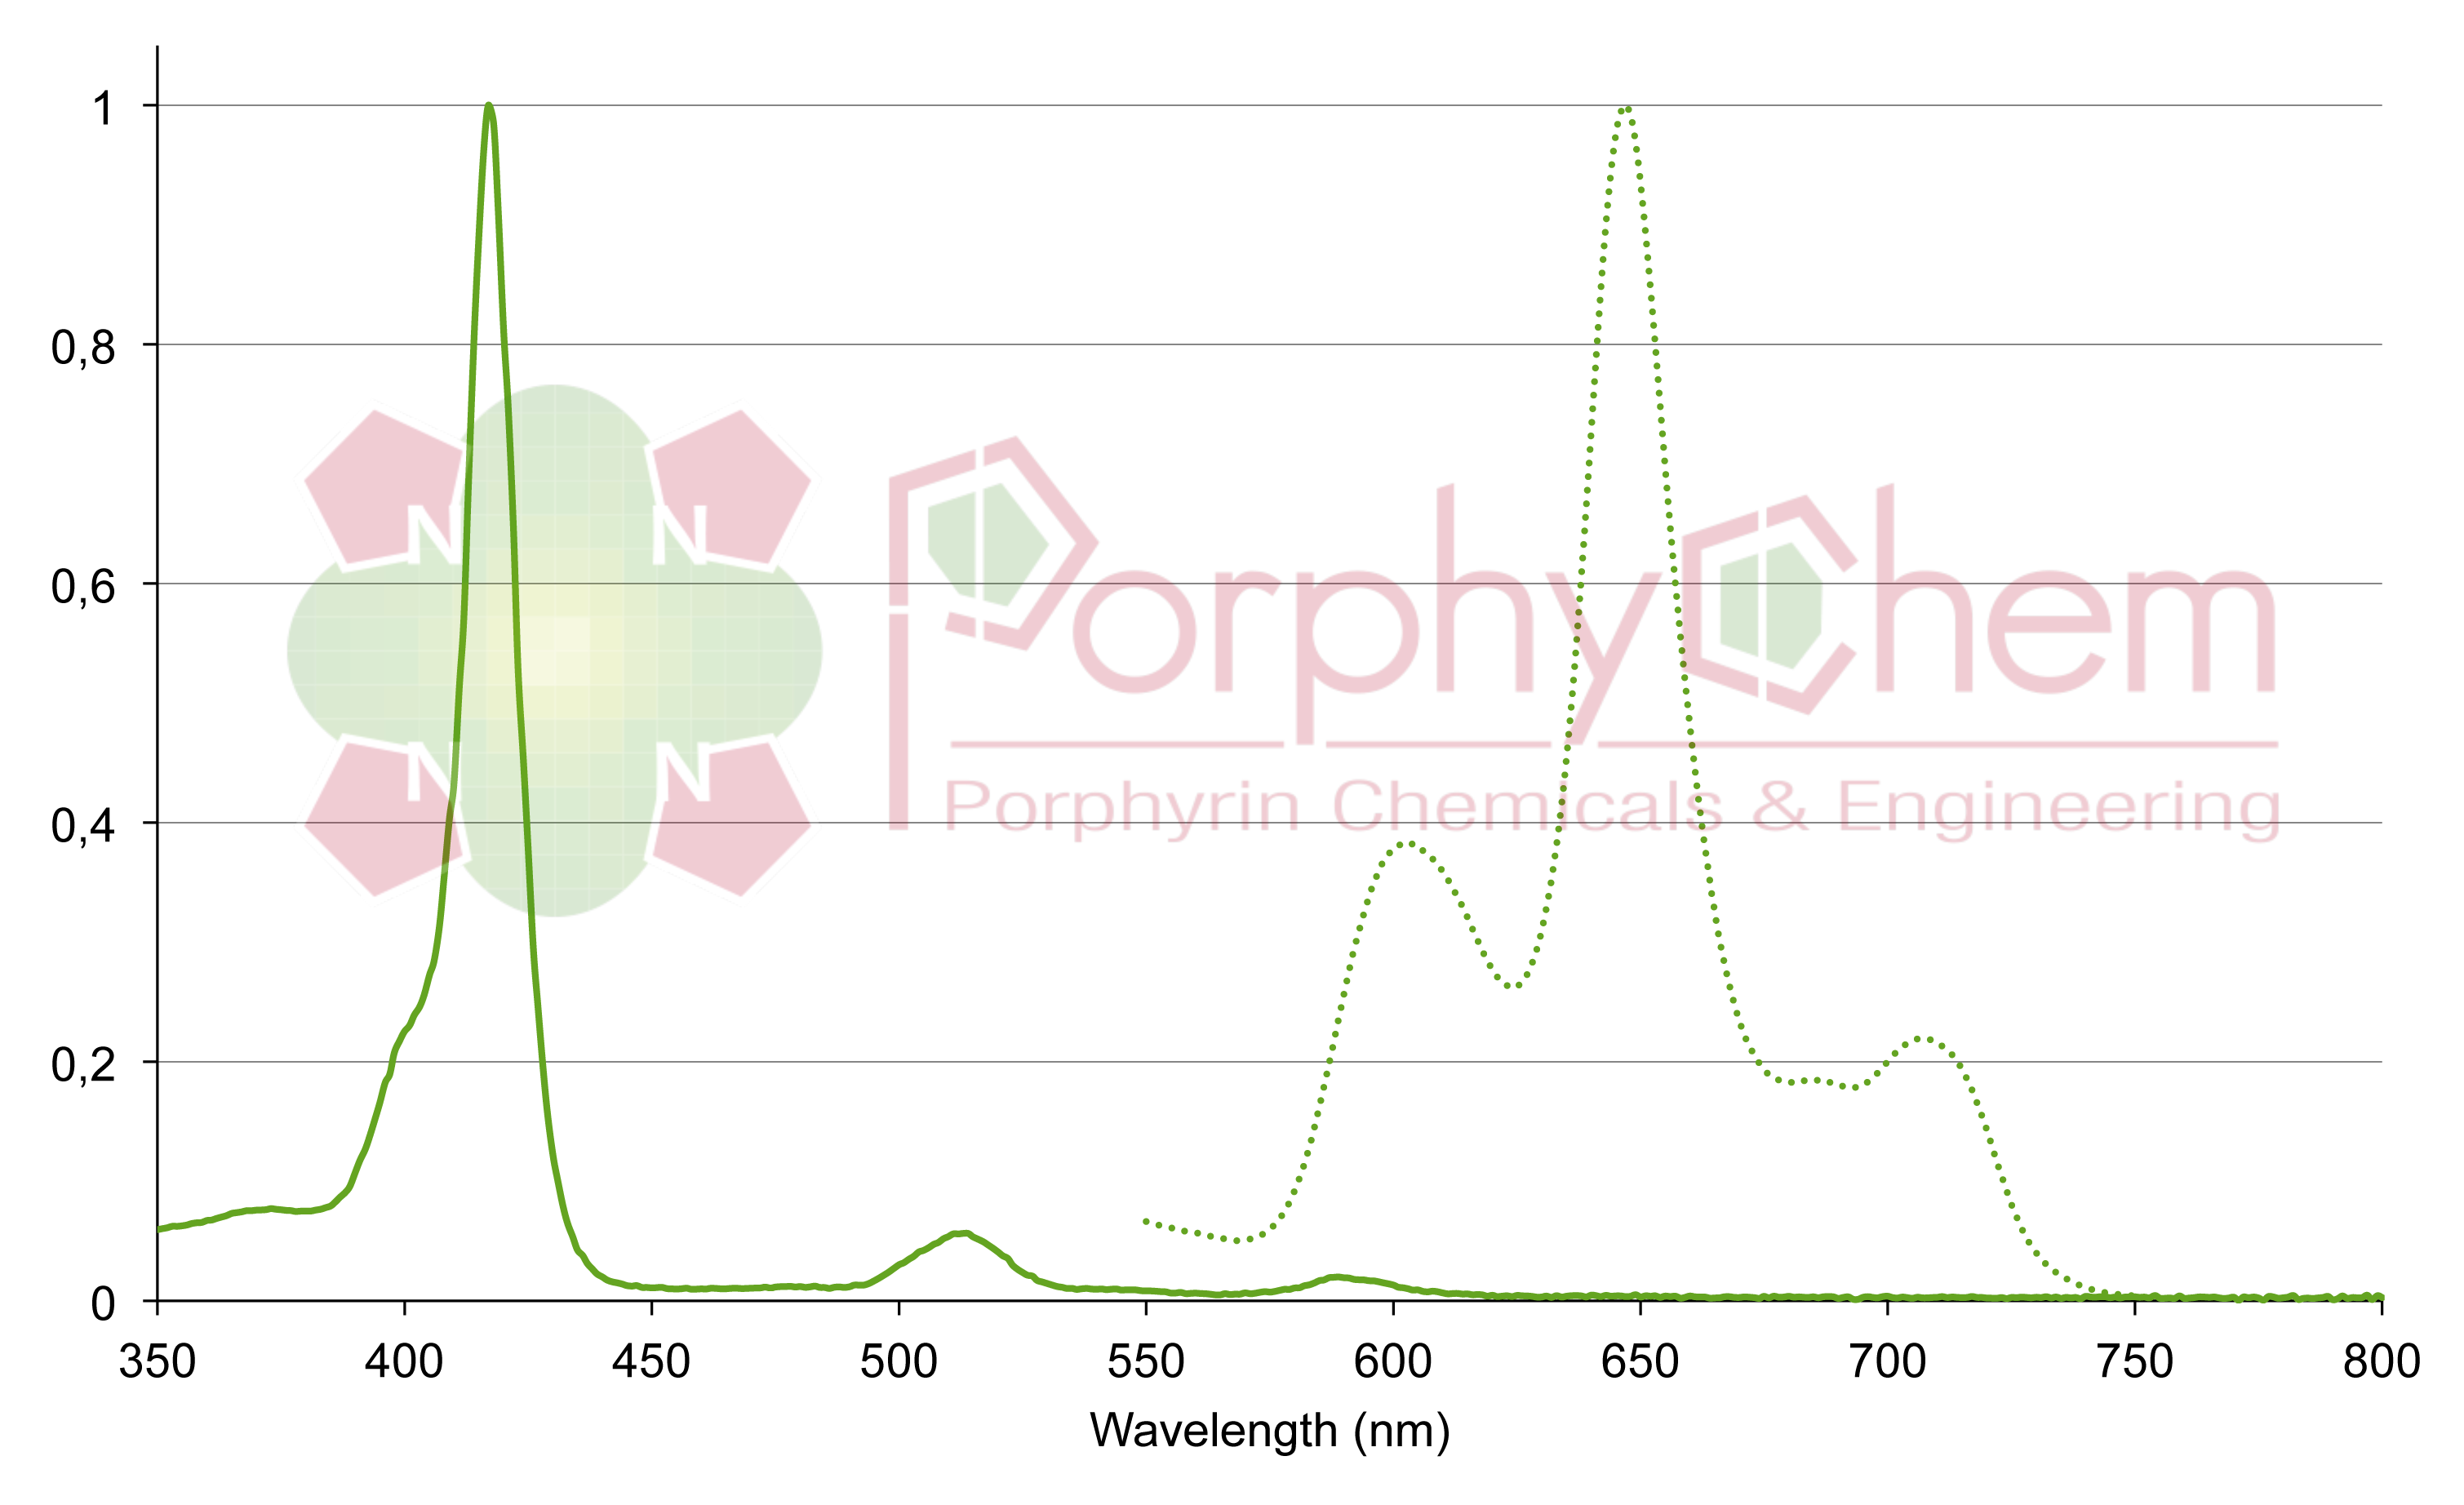 tetra-2,6-chlorophenylporphyrin UV-Vis